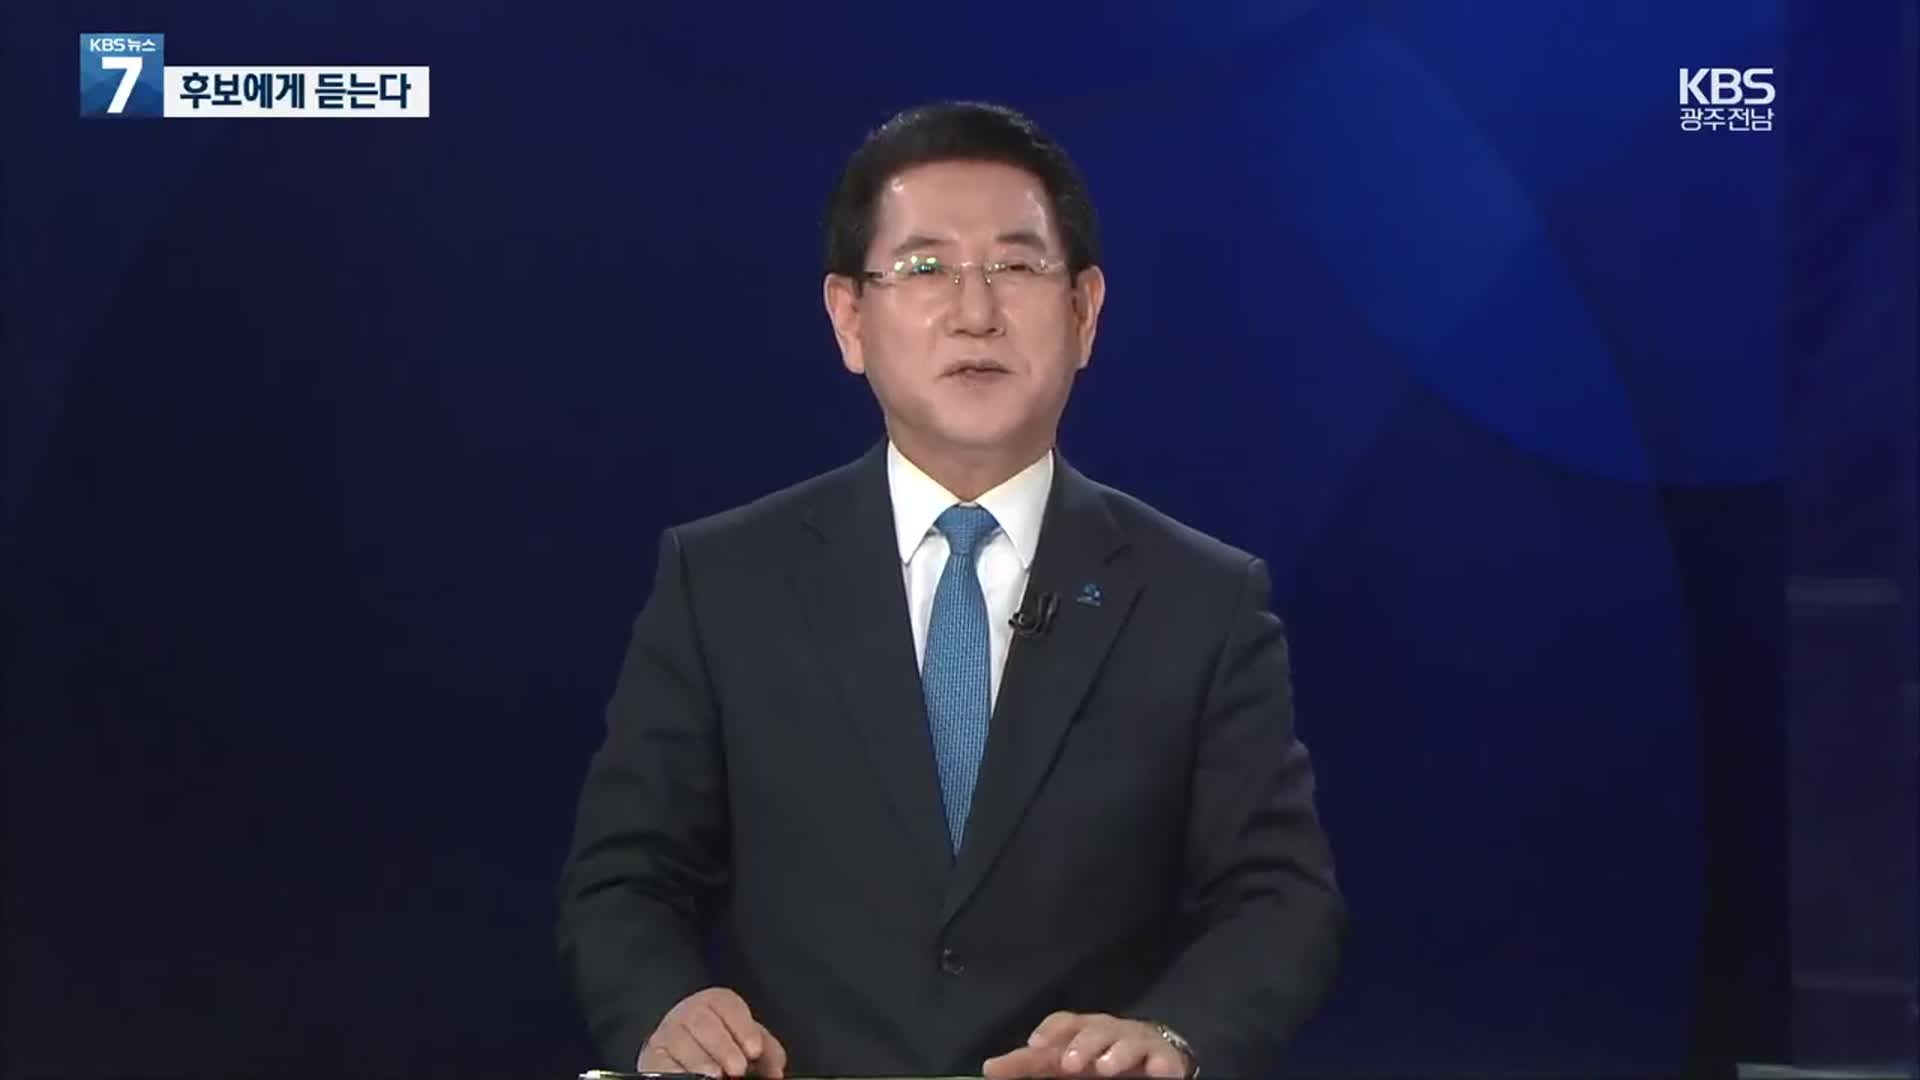 김영록 민주당 전남지사 후보에게 듣는다